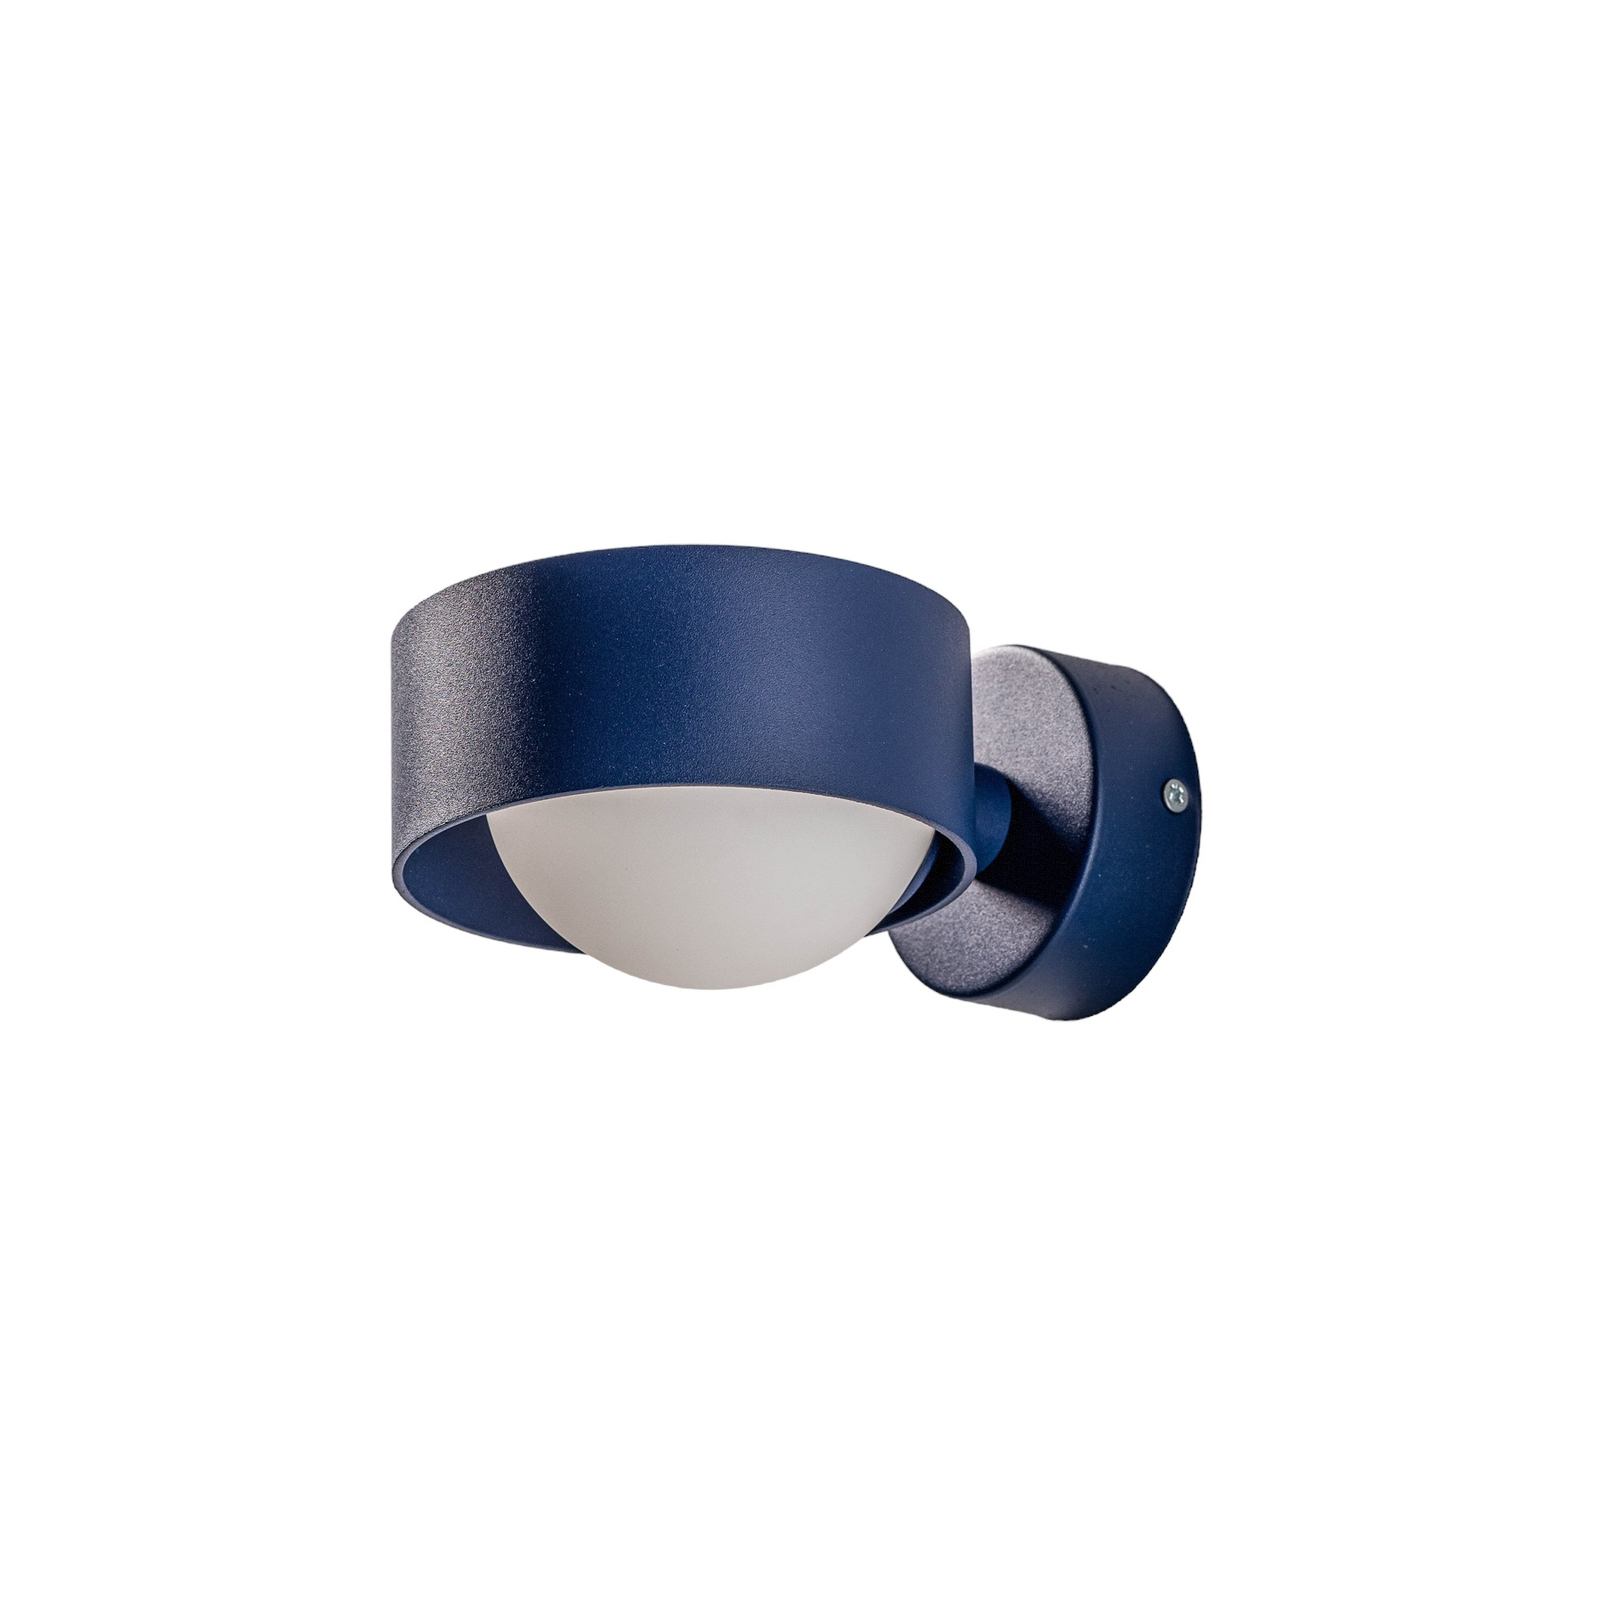 Vägglampa Mado av stål, blå, 1 lampa